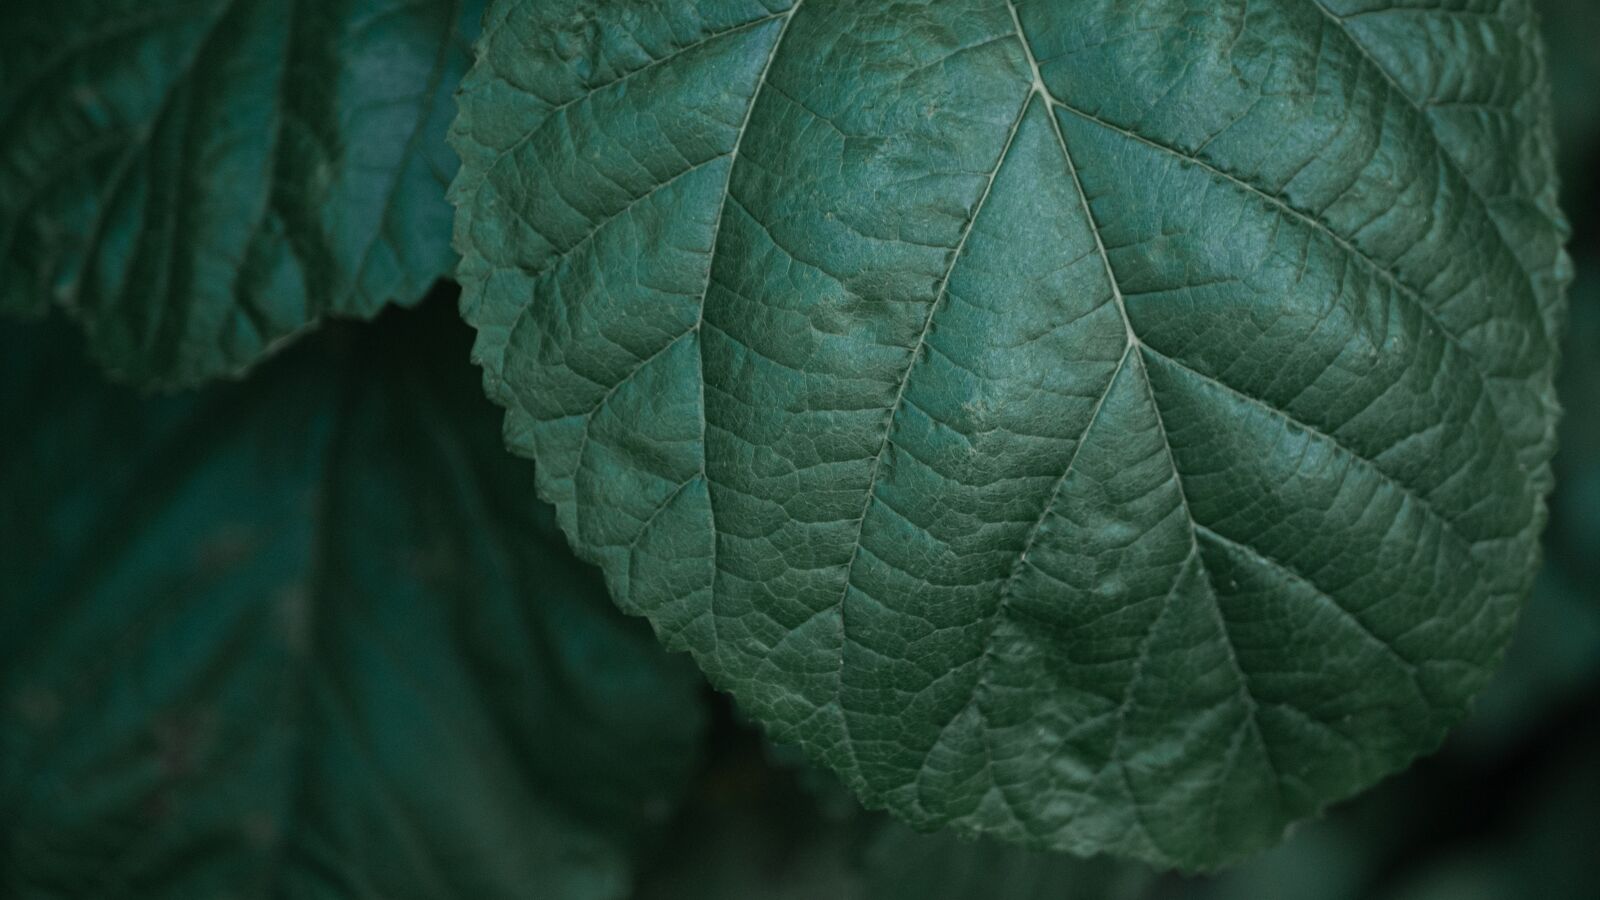 LUMIX G 25/F1.7 sample photo. Plant, leaf, background photography